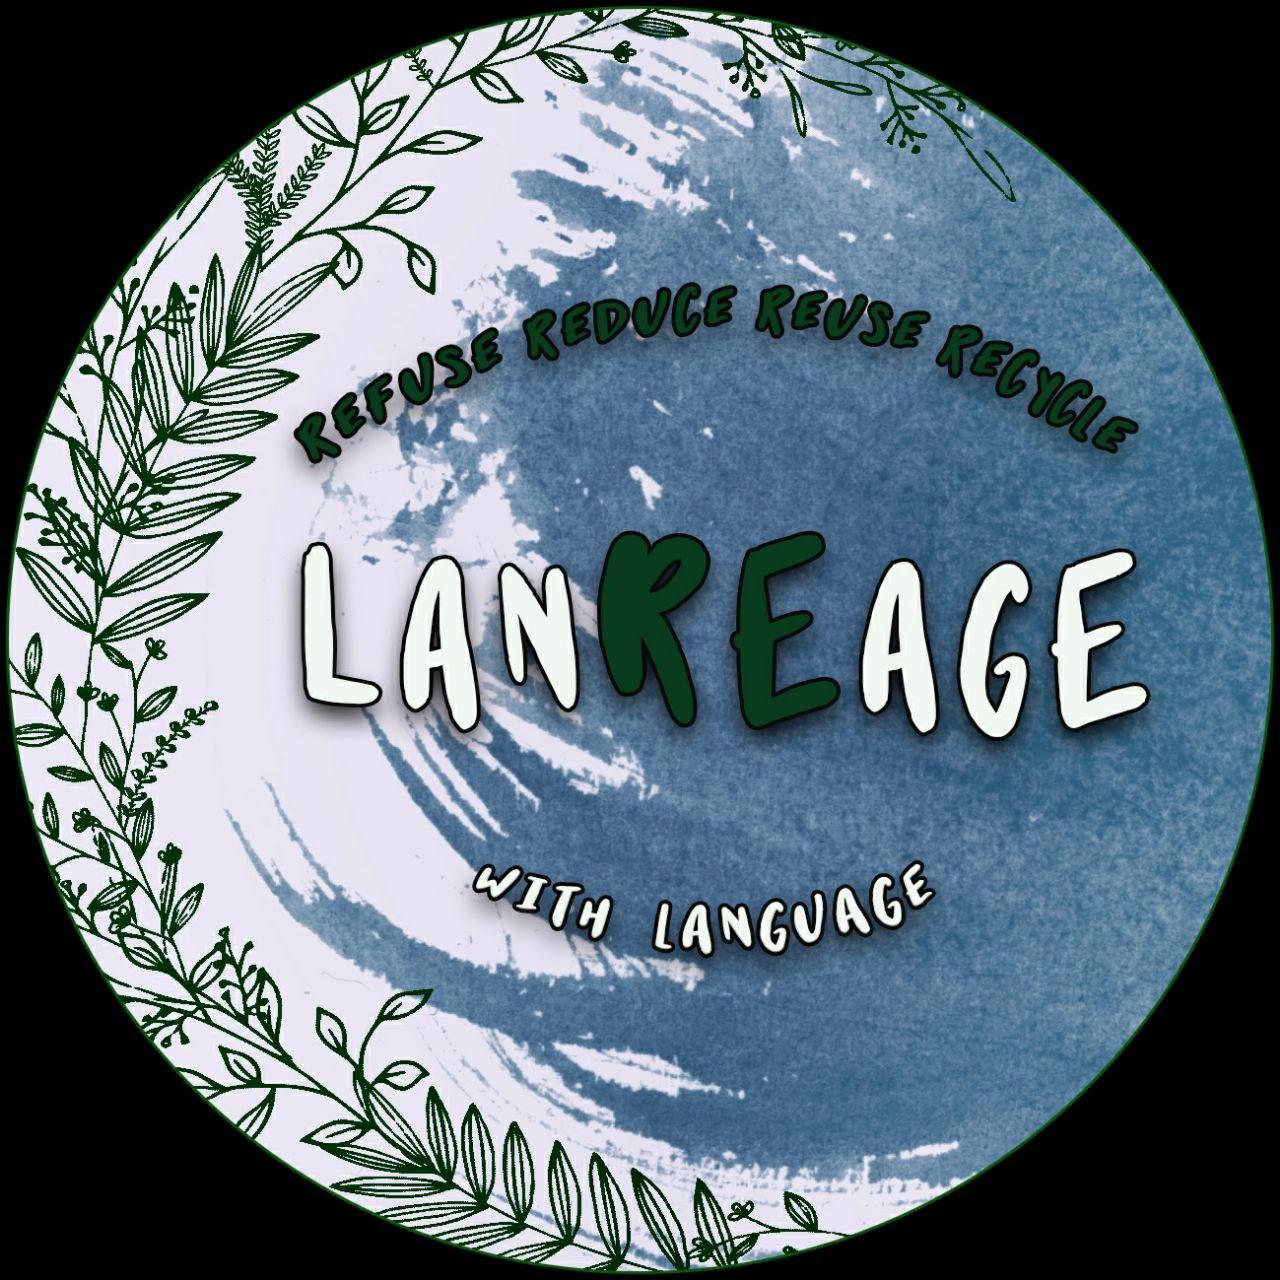 Справочник - 1 - Lanreage